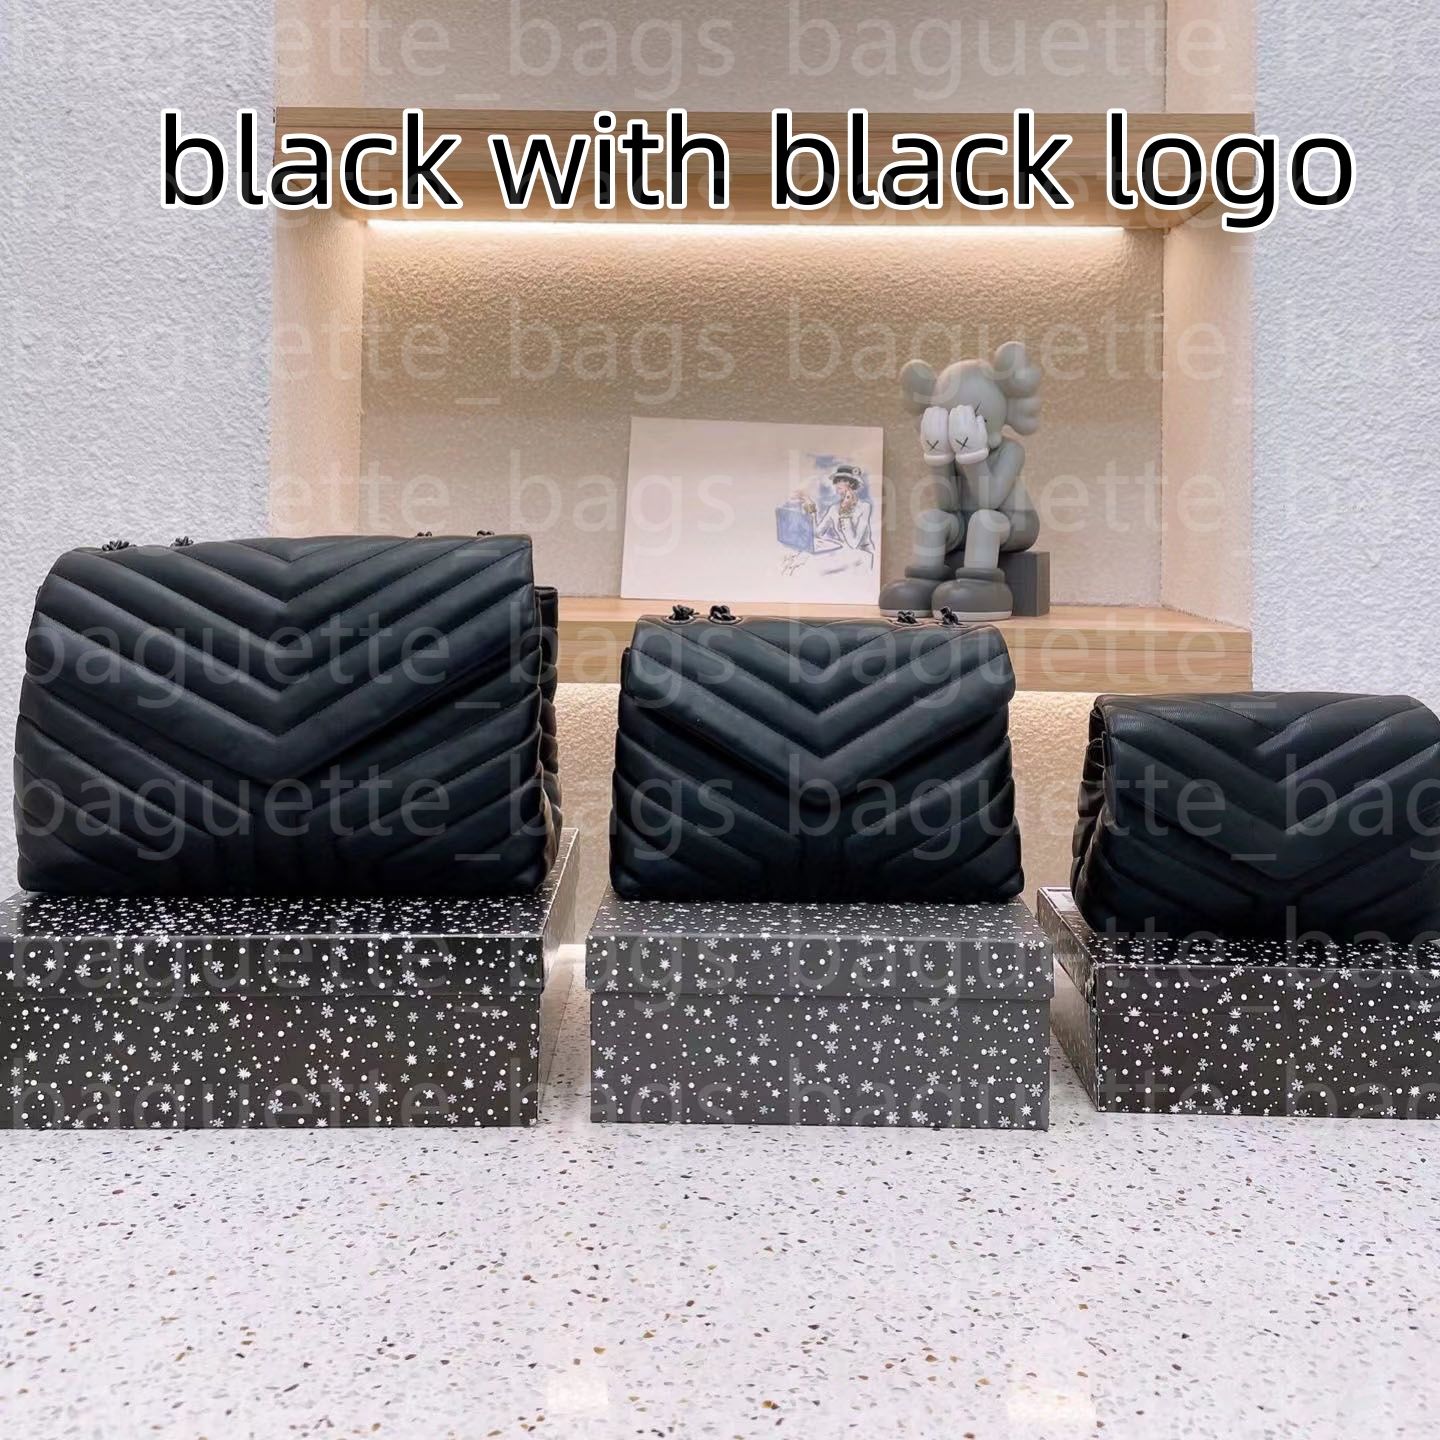 Logotipo preto_black